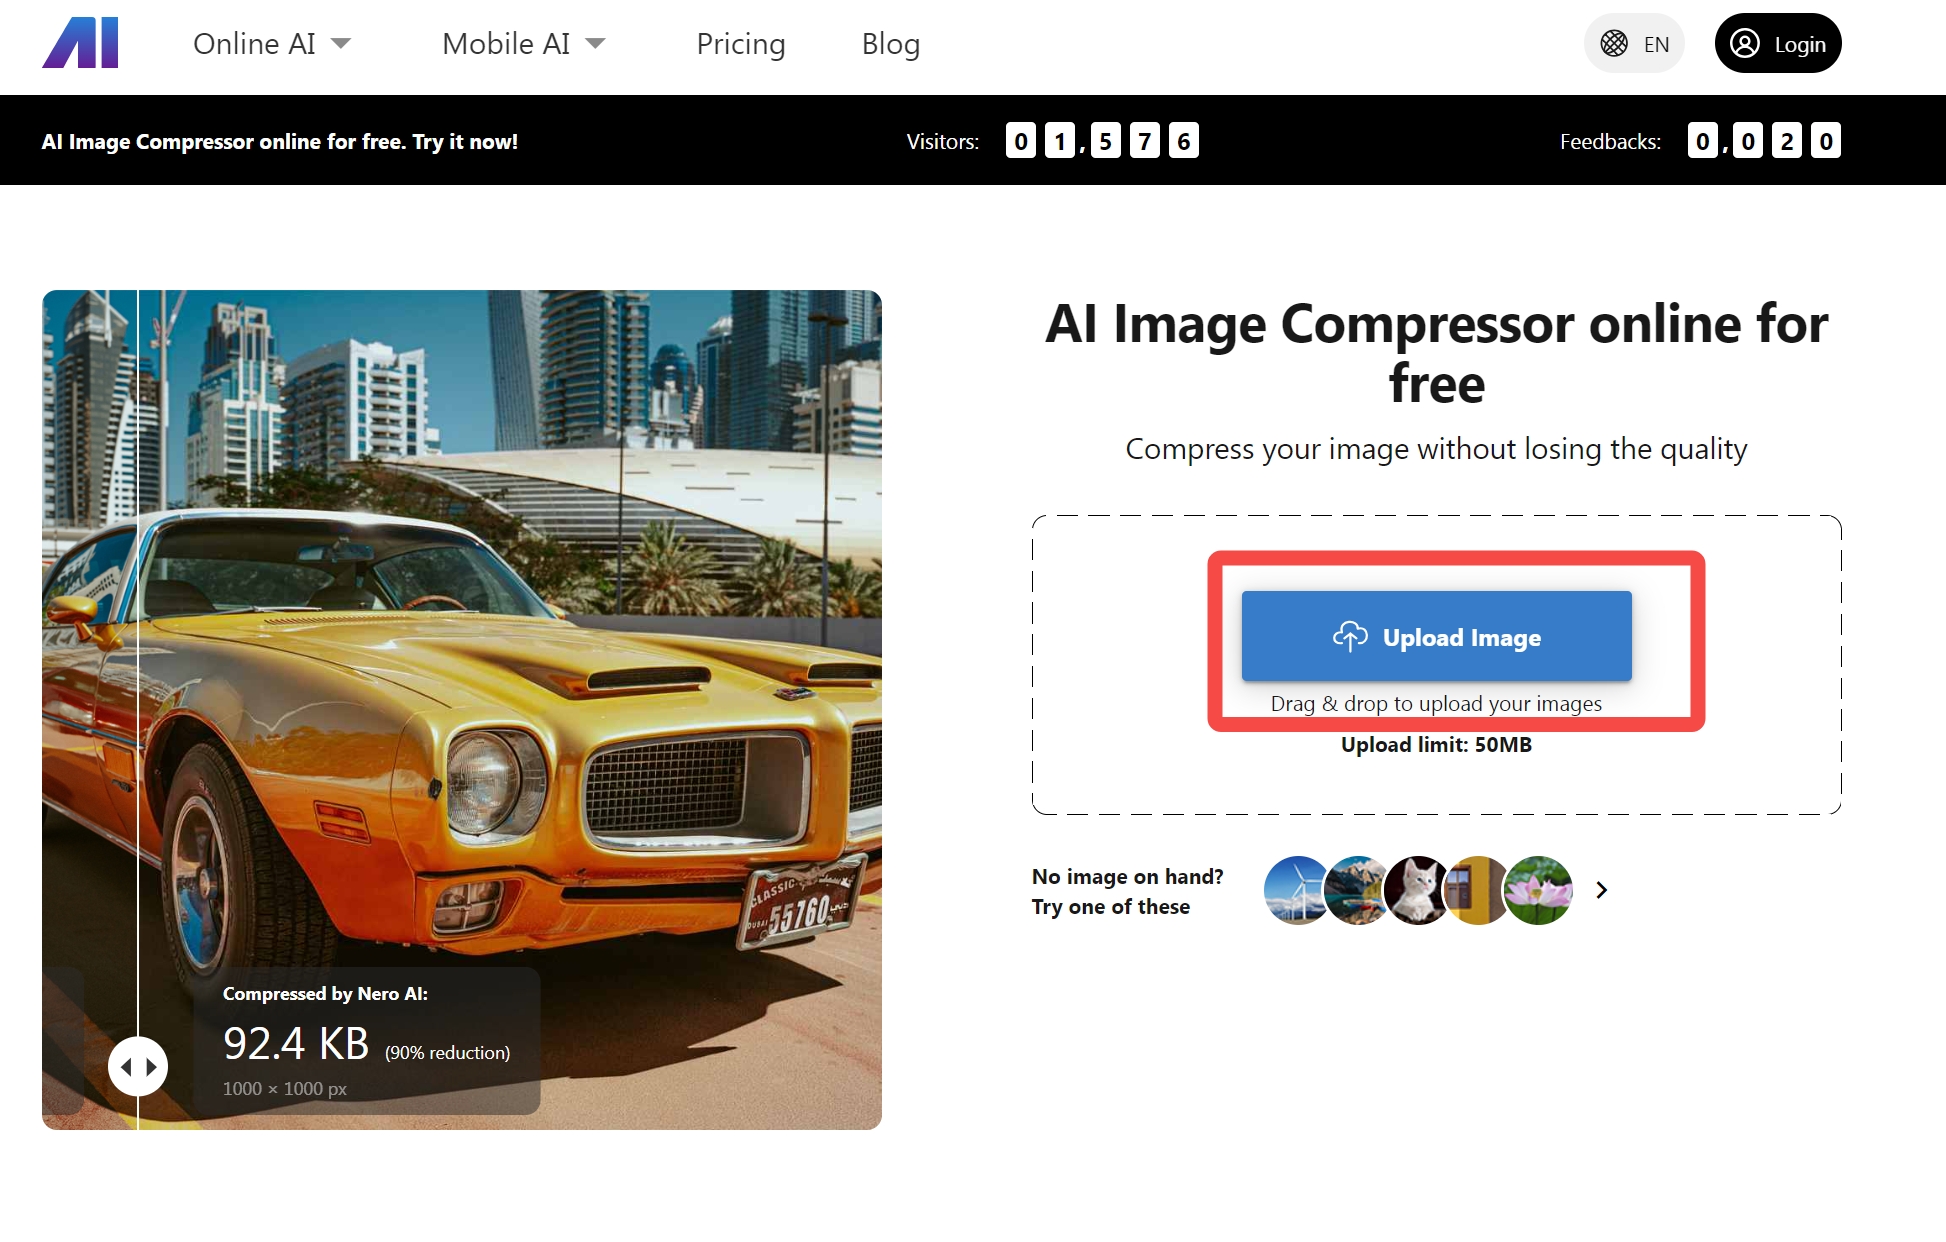 nero ai image compressor -one click to upload